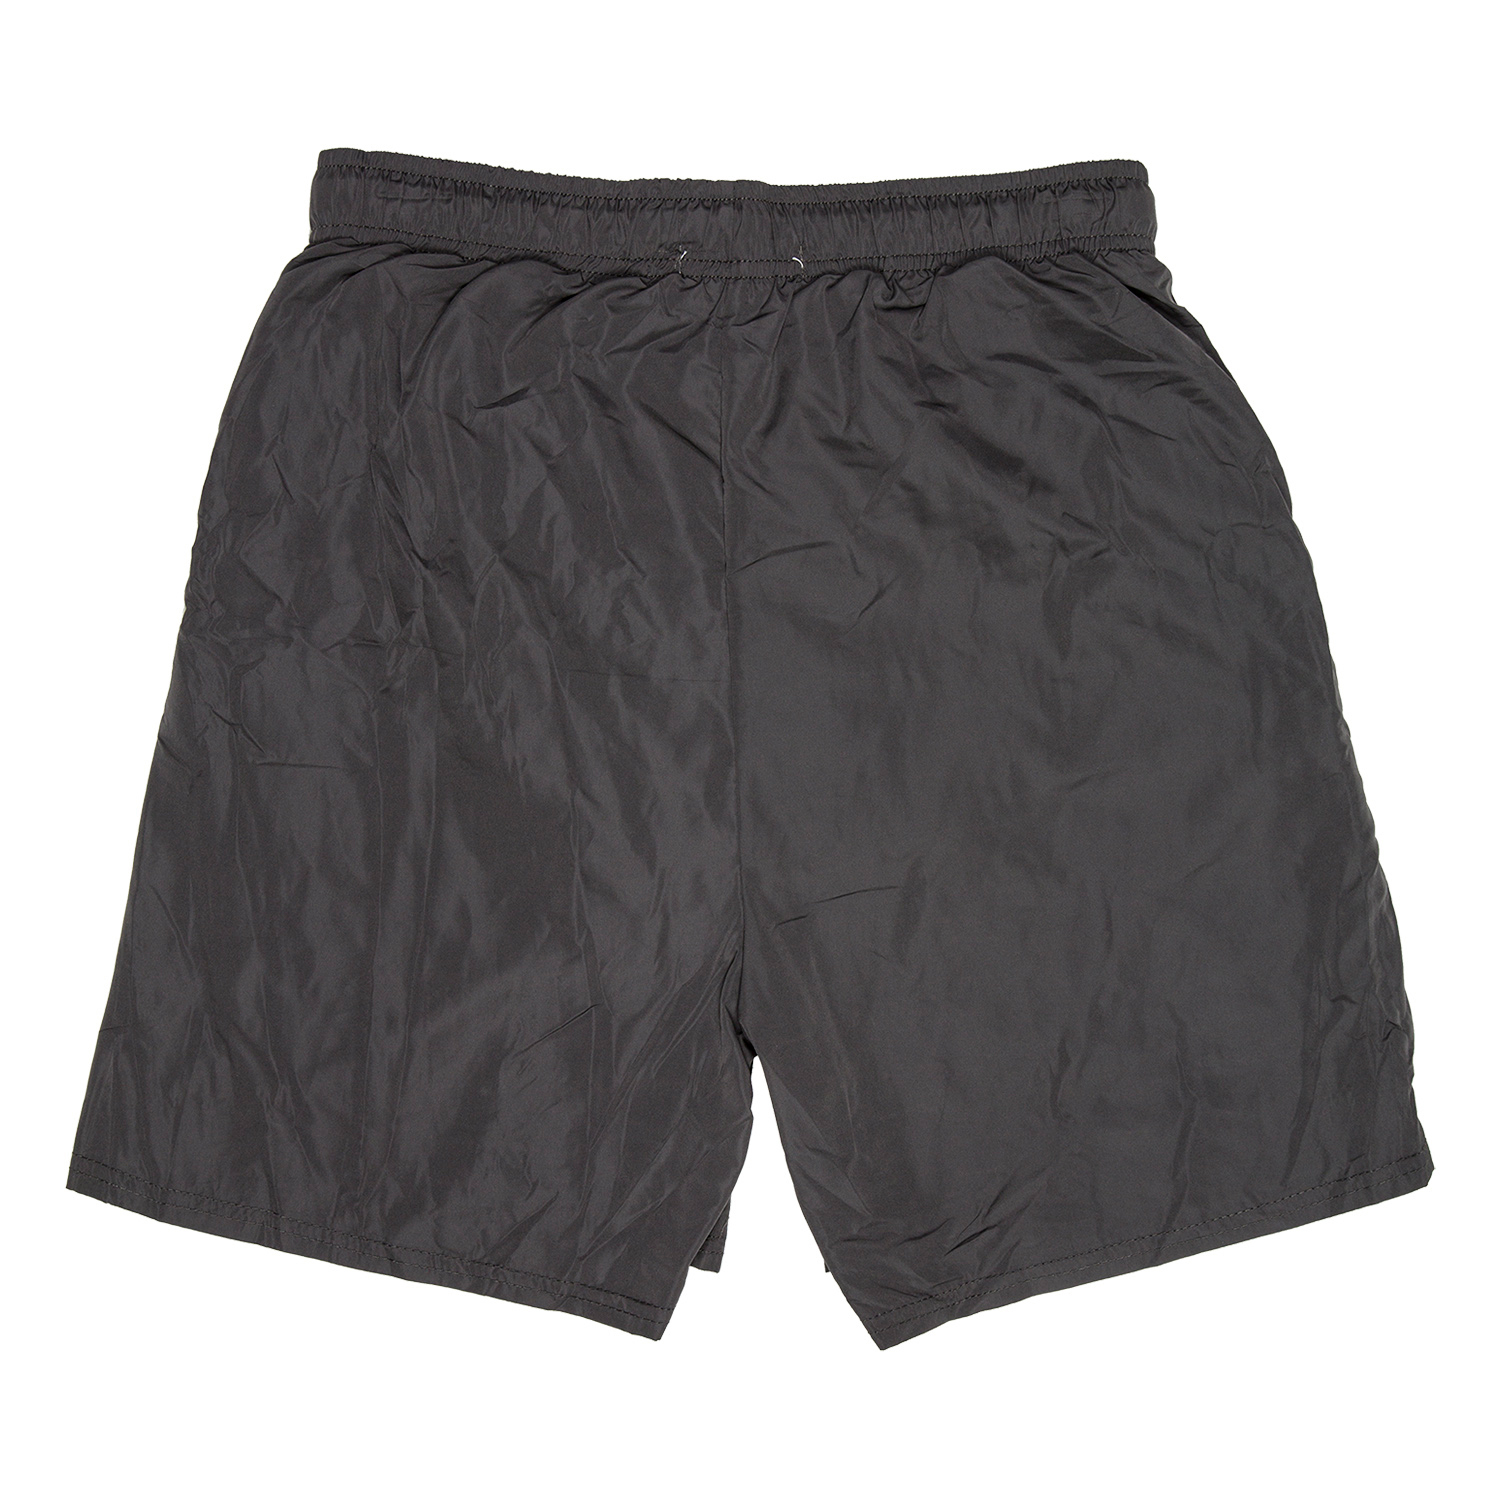 Active Sport Men's Woven Shorts - Black / L Image